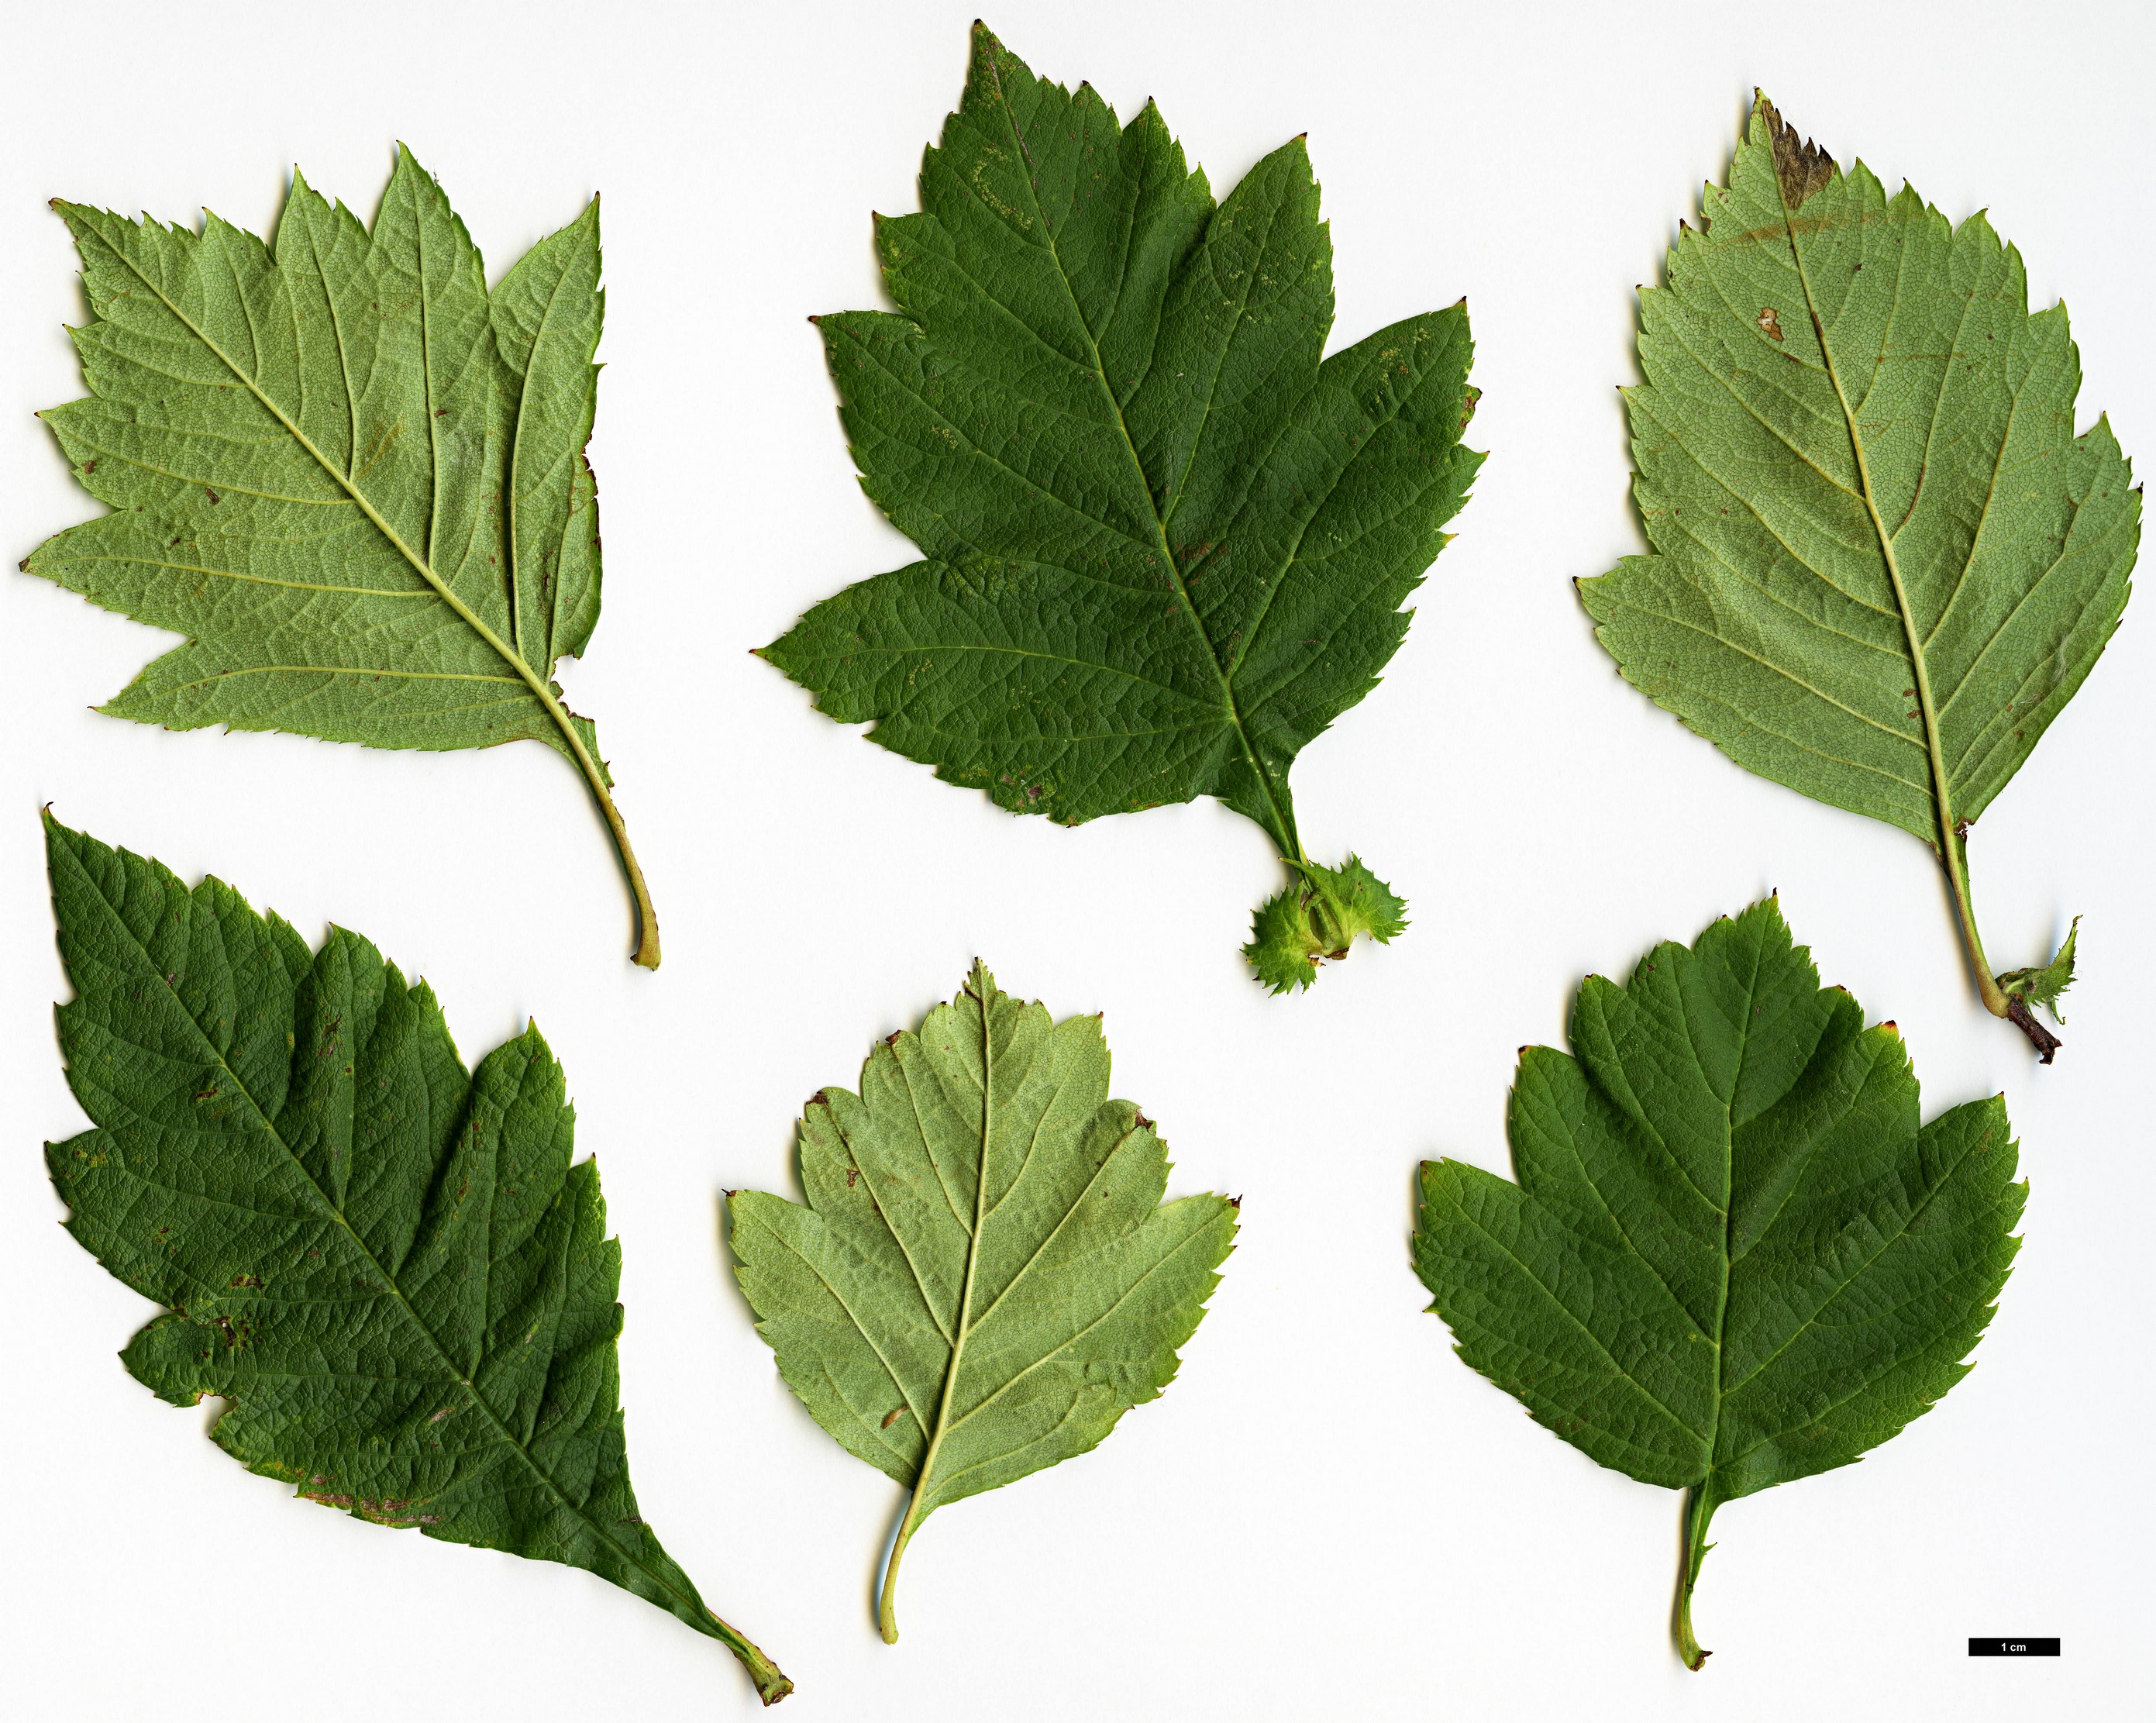 High resolution image: Family: Rosaceae - Genus: Crataegus - Taxon: nigra - SpeciesSub: 'Hortobagy'